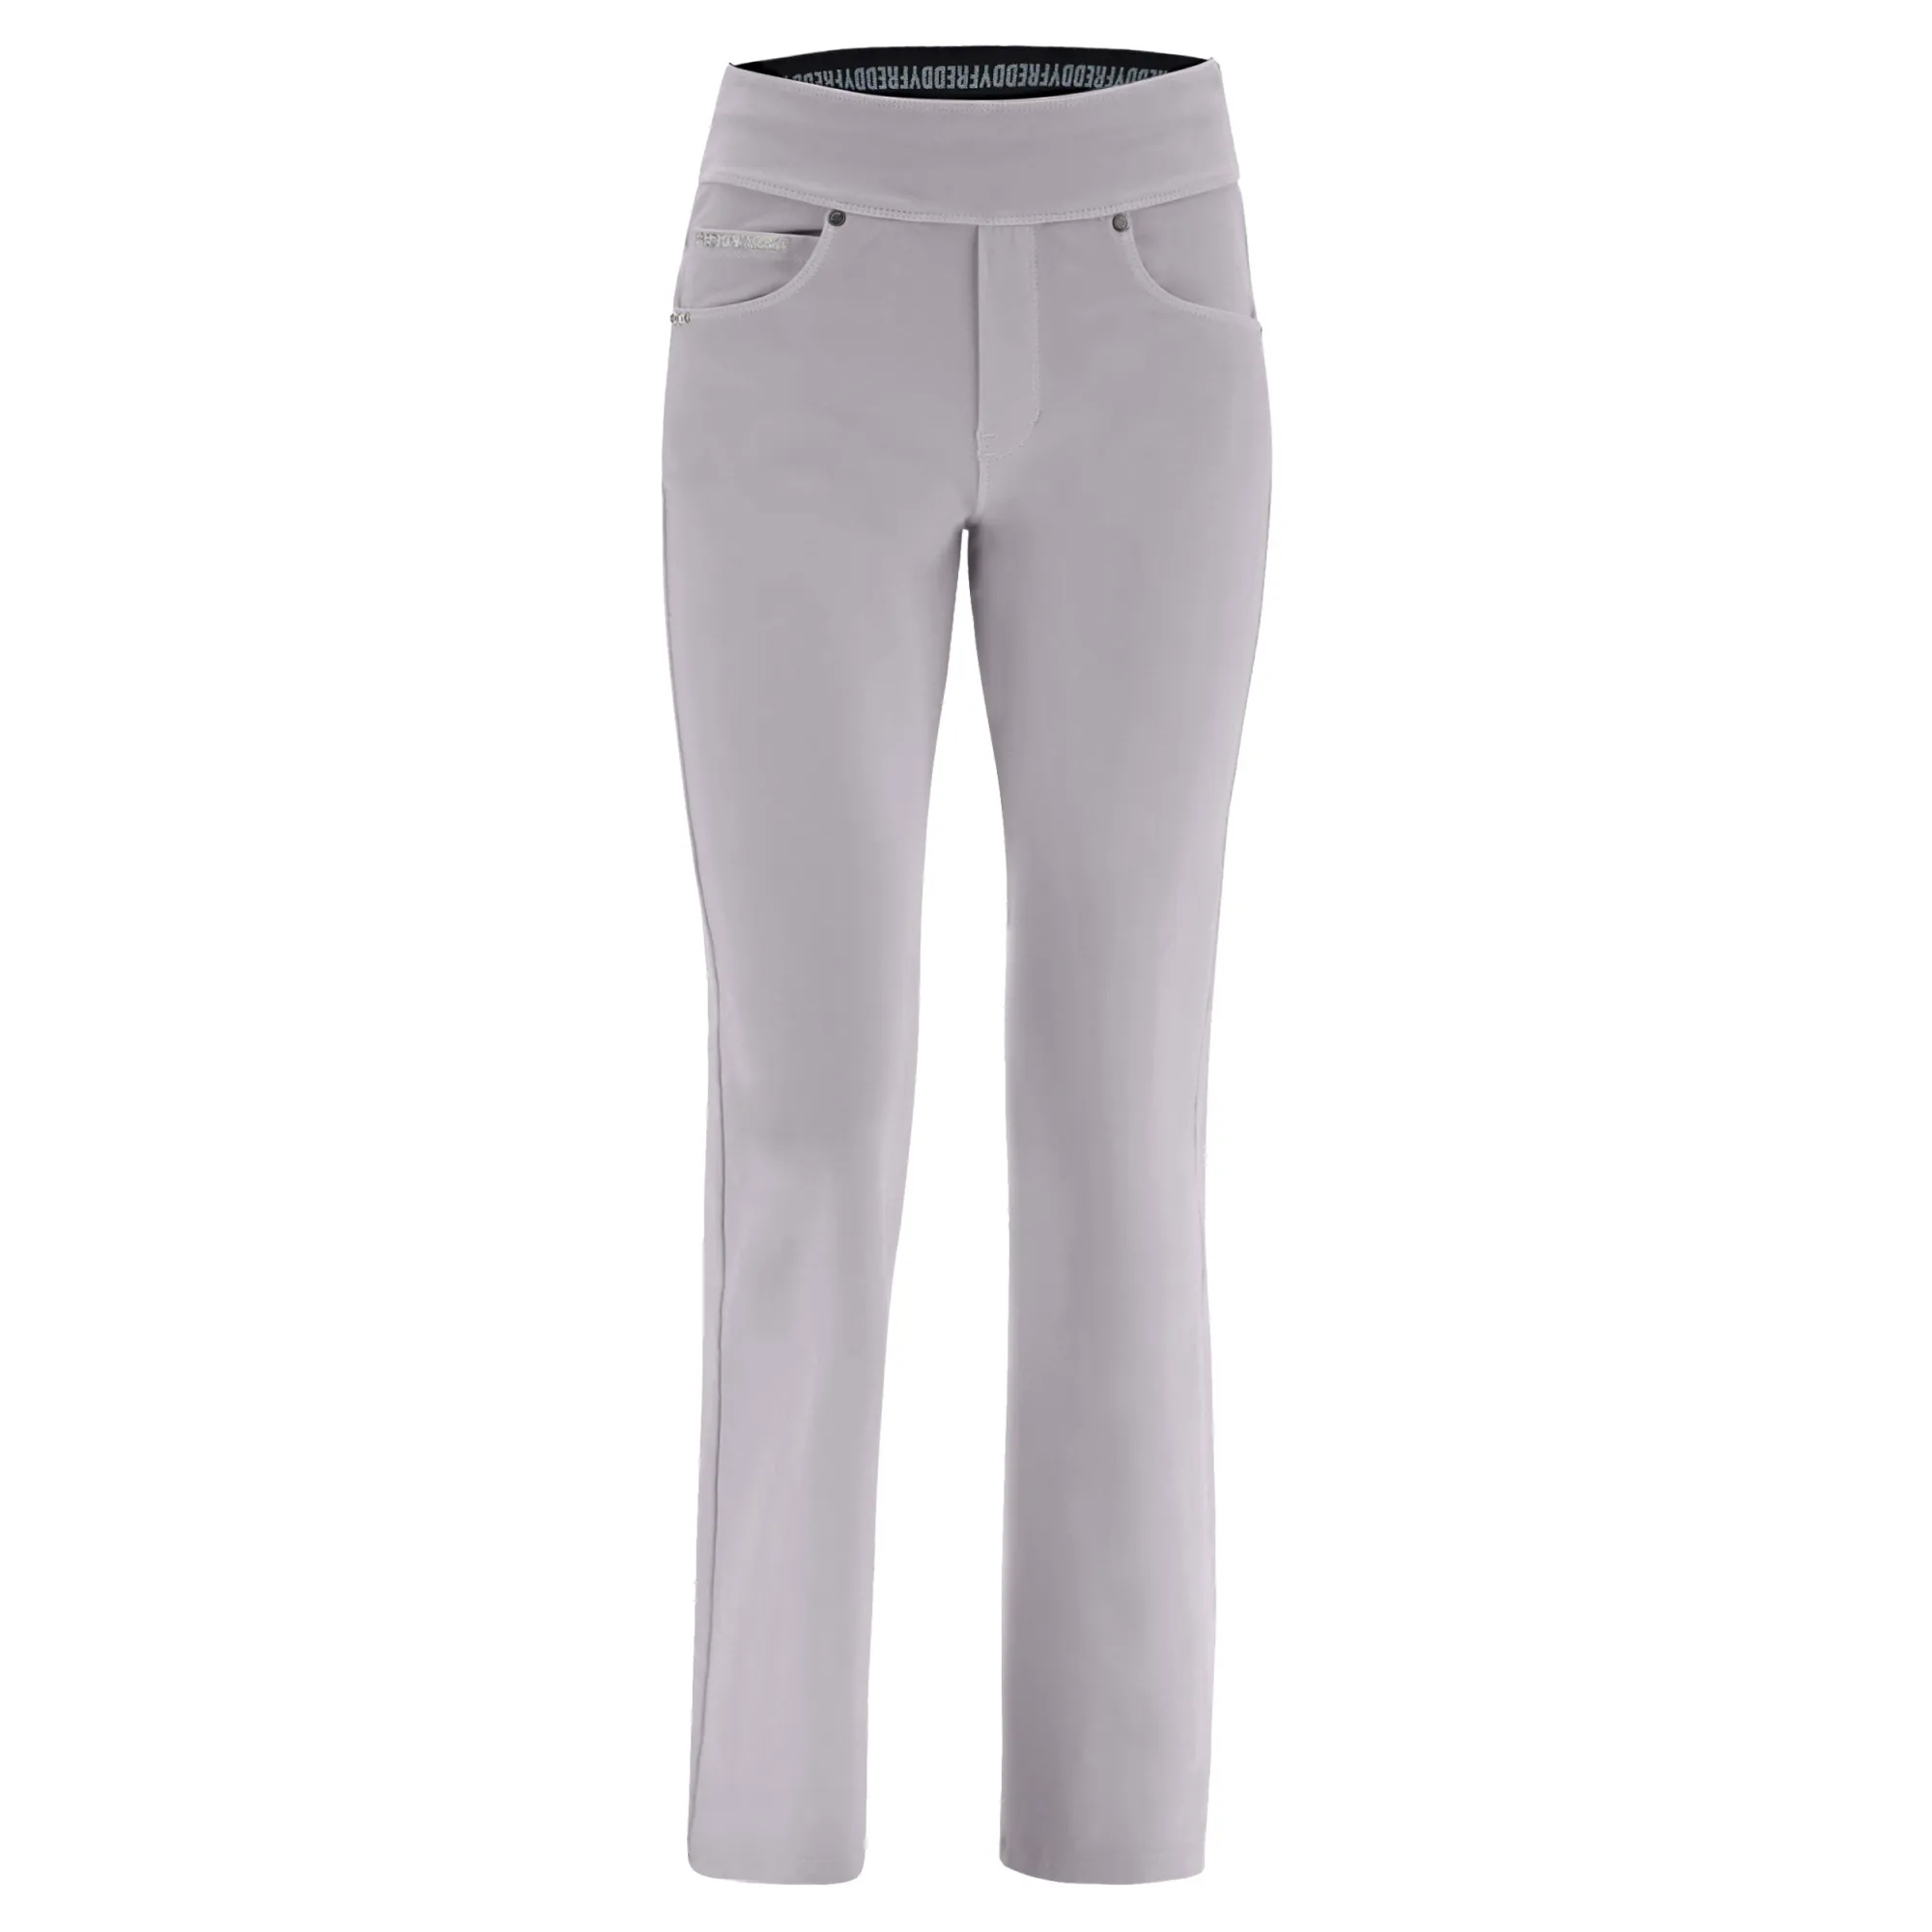 Freddy N.O.W.® Yoga Damen Comfort Hose - Mid Waist Straight - umschlagbarer Taillenbund - Garment Dyed - Grau - G121